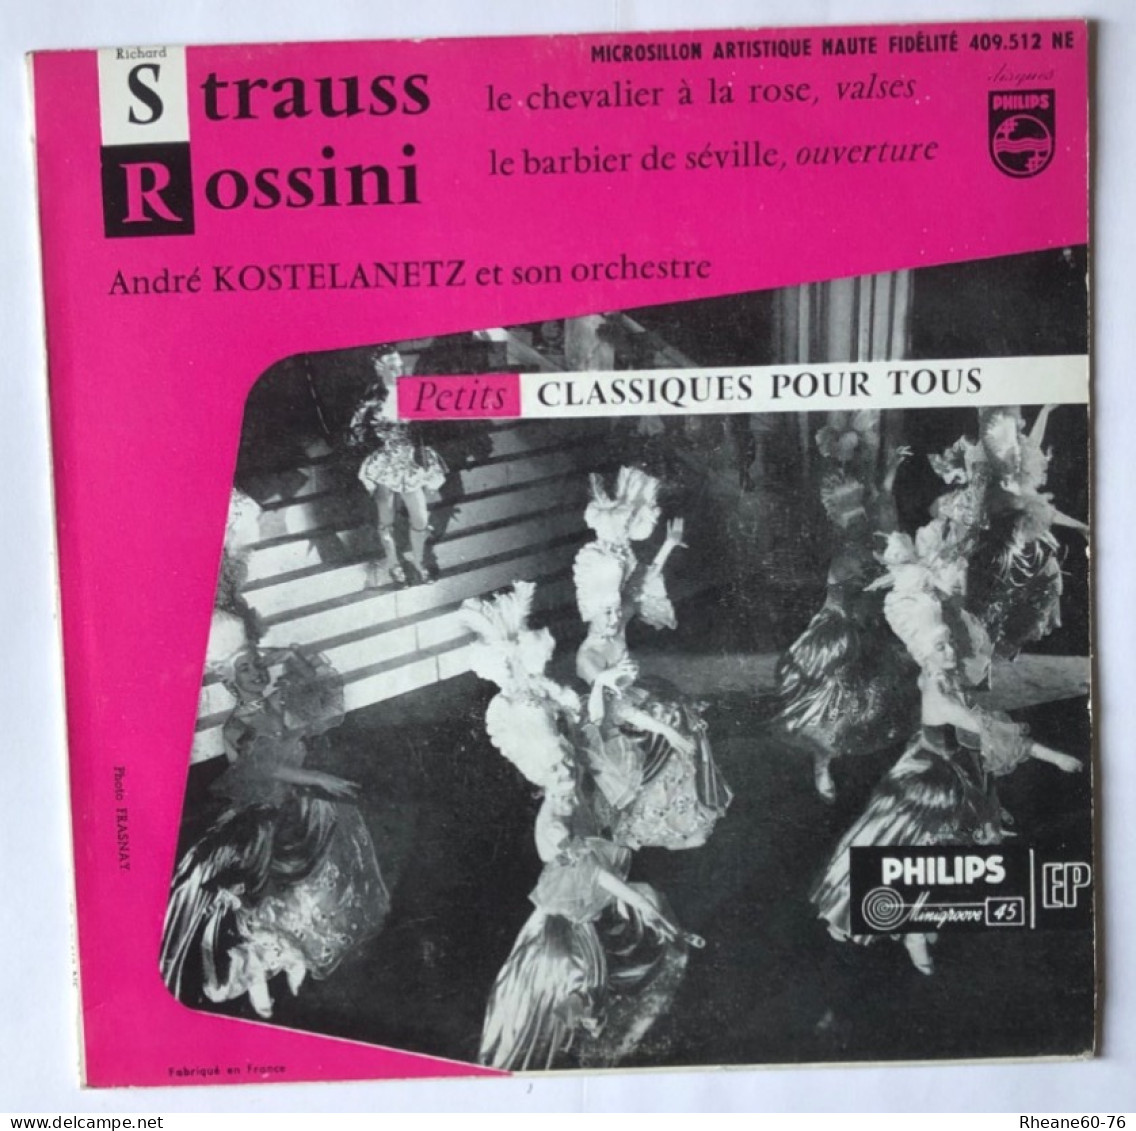 Philips 409.512 NE - 45T EP - Strauss / Rossini - A Kostelanetz Et Son Orchestre- Microsillon Artistique Haute Fidélité - Special Formats